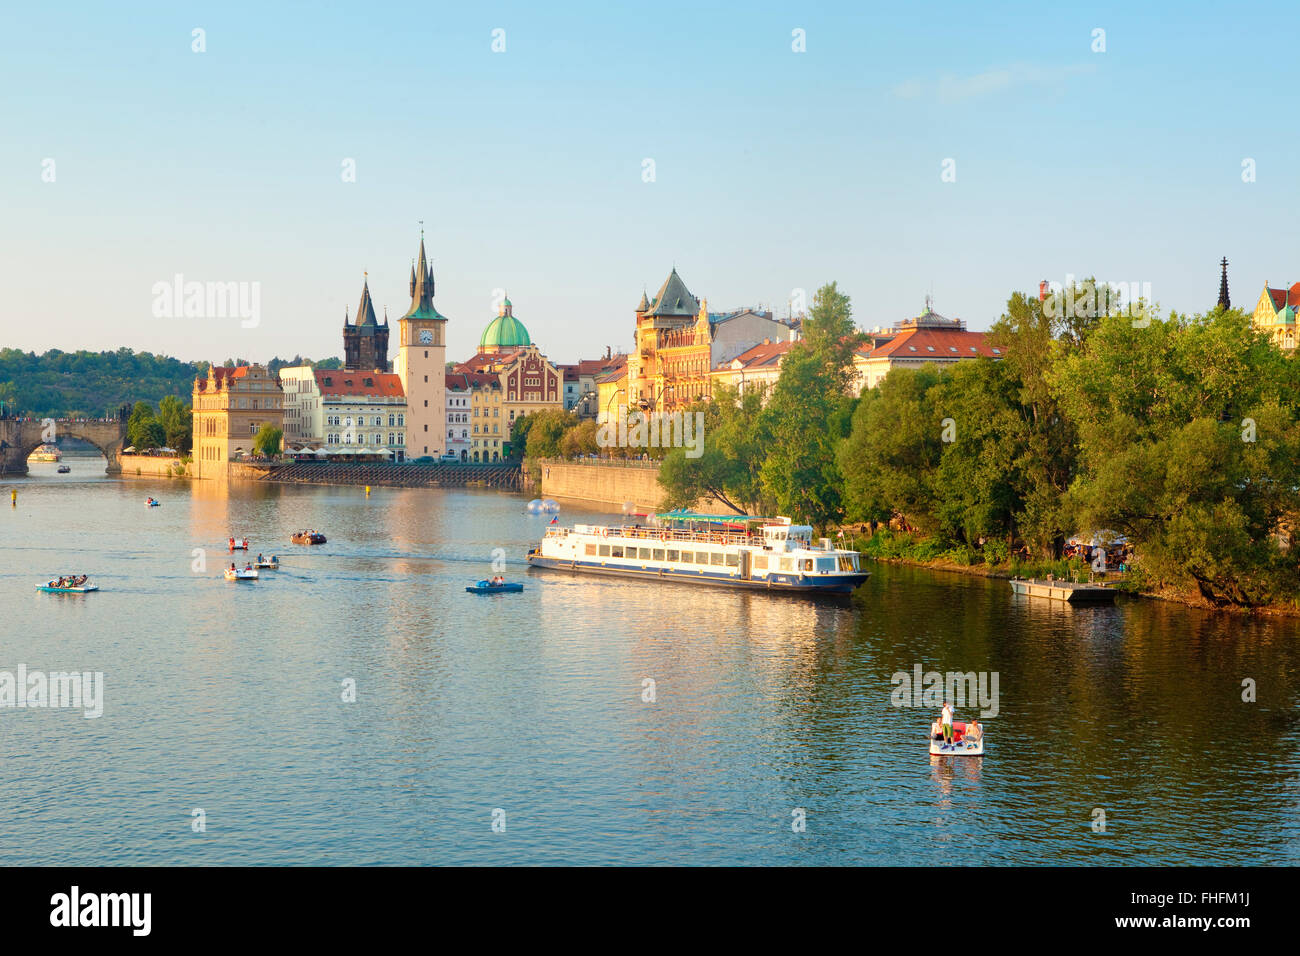 République tchèque, Prague - bateaux sur la rivière Vltava - clochers de la Vieille Ville Banque D'Images